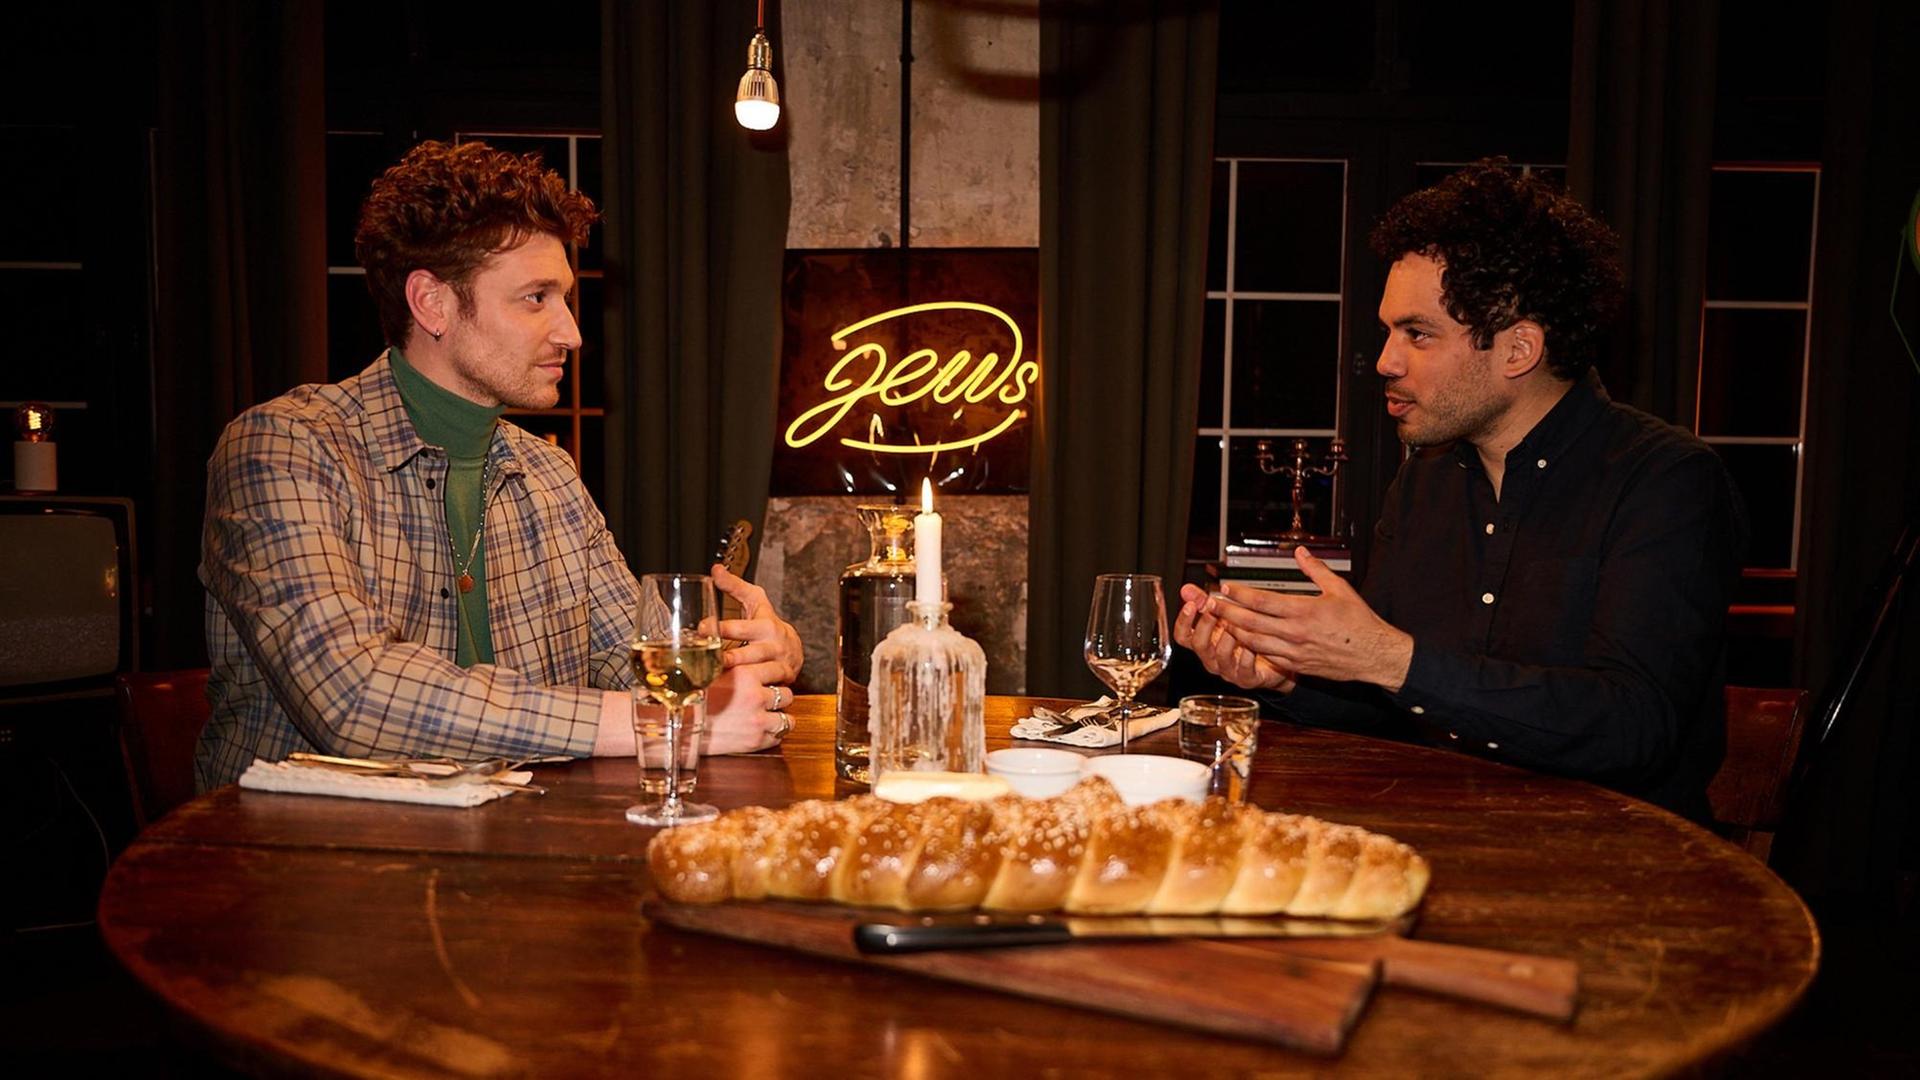 Zwei junge Männer sitzen an einem runden, gedeckten Esstisch aus Holz und unterhalten sich. Hinter ihnen befindet sich als gelbe Leuchtschrift das Wort "Jews".